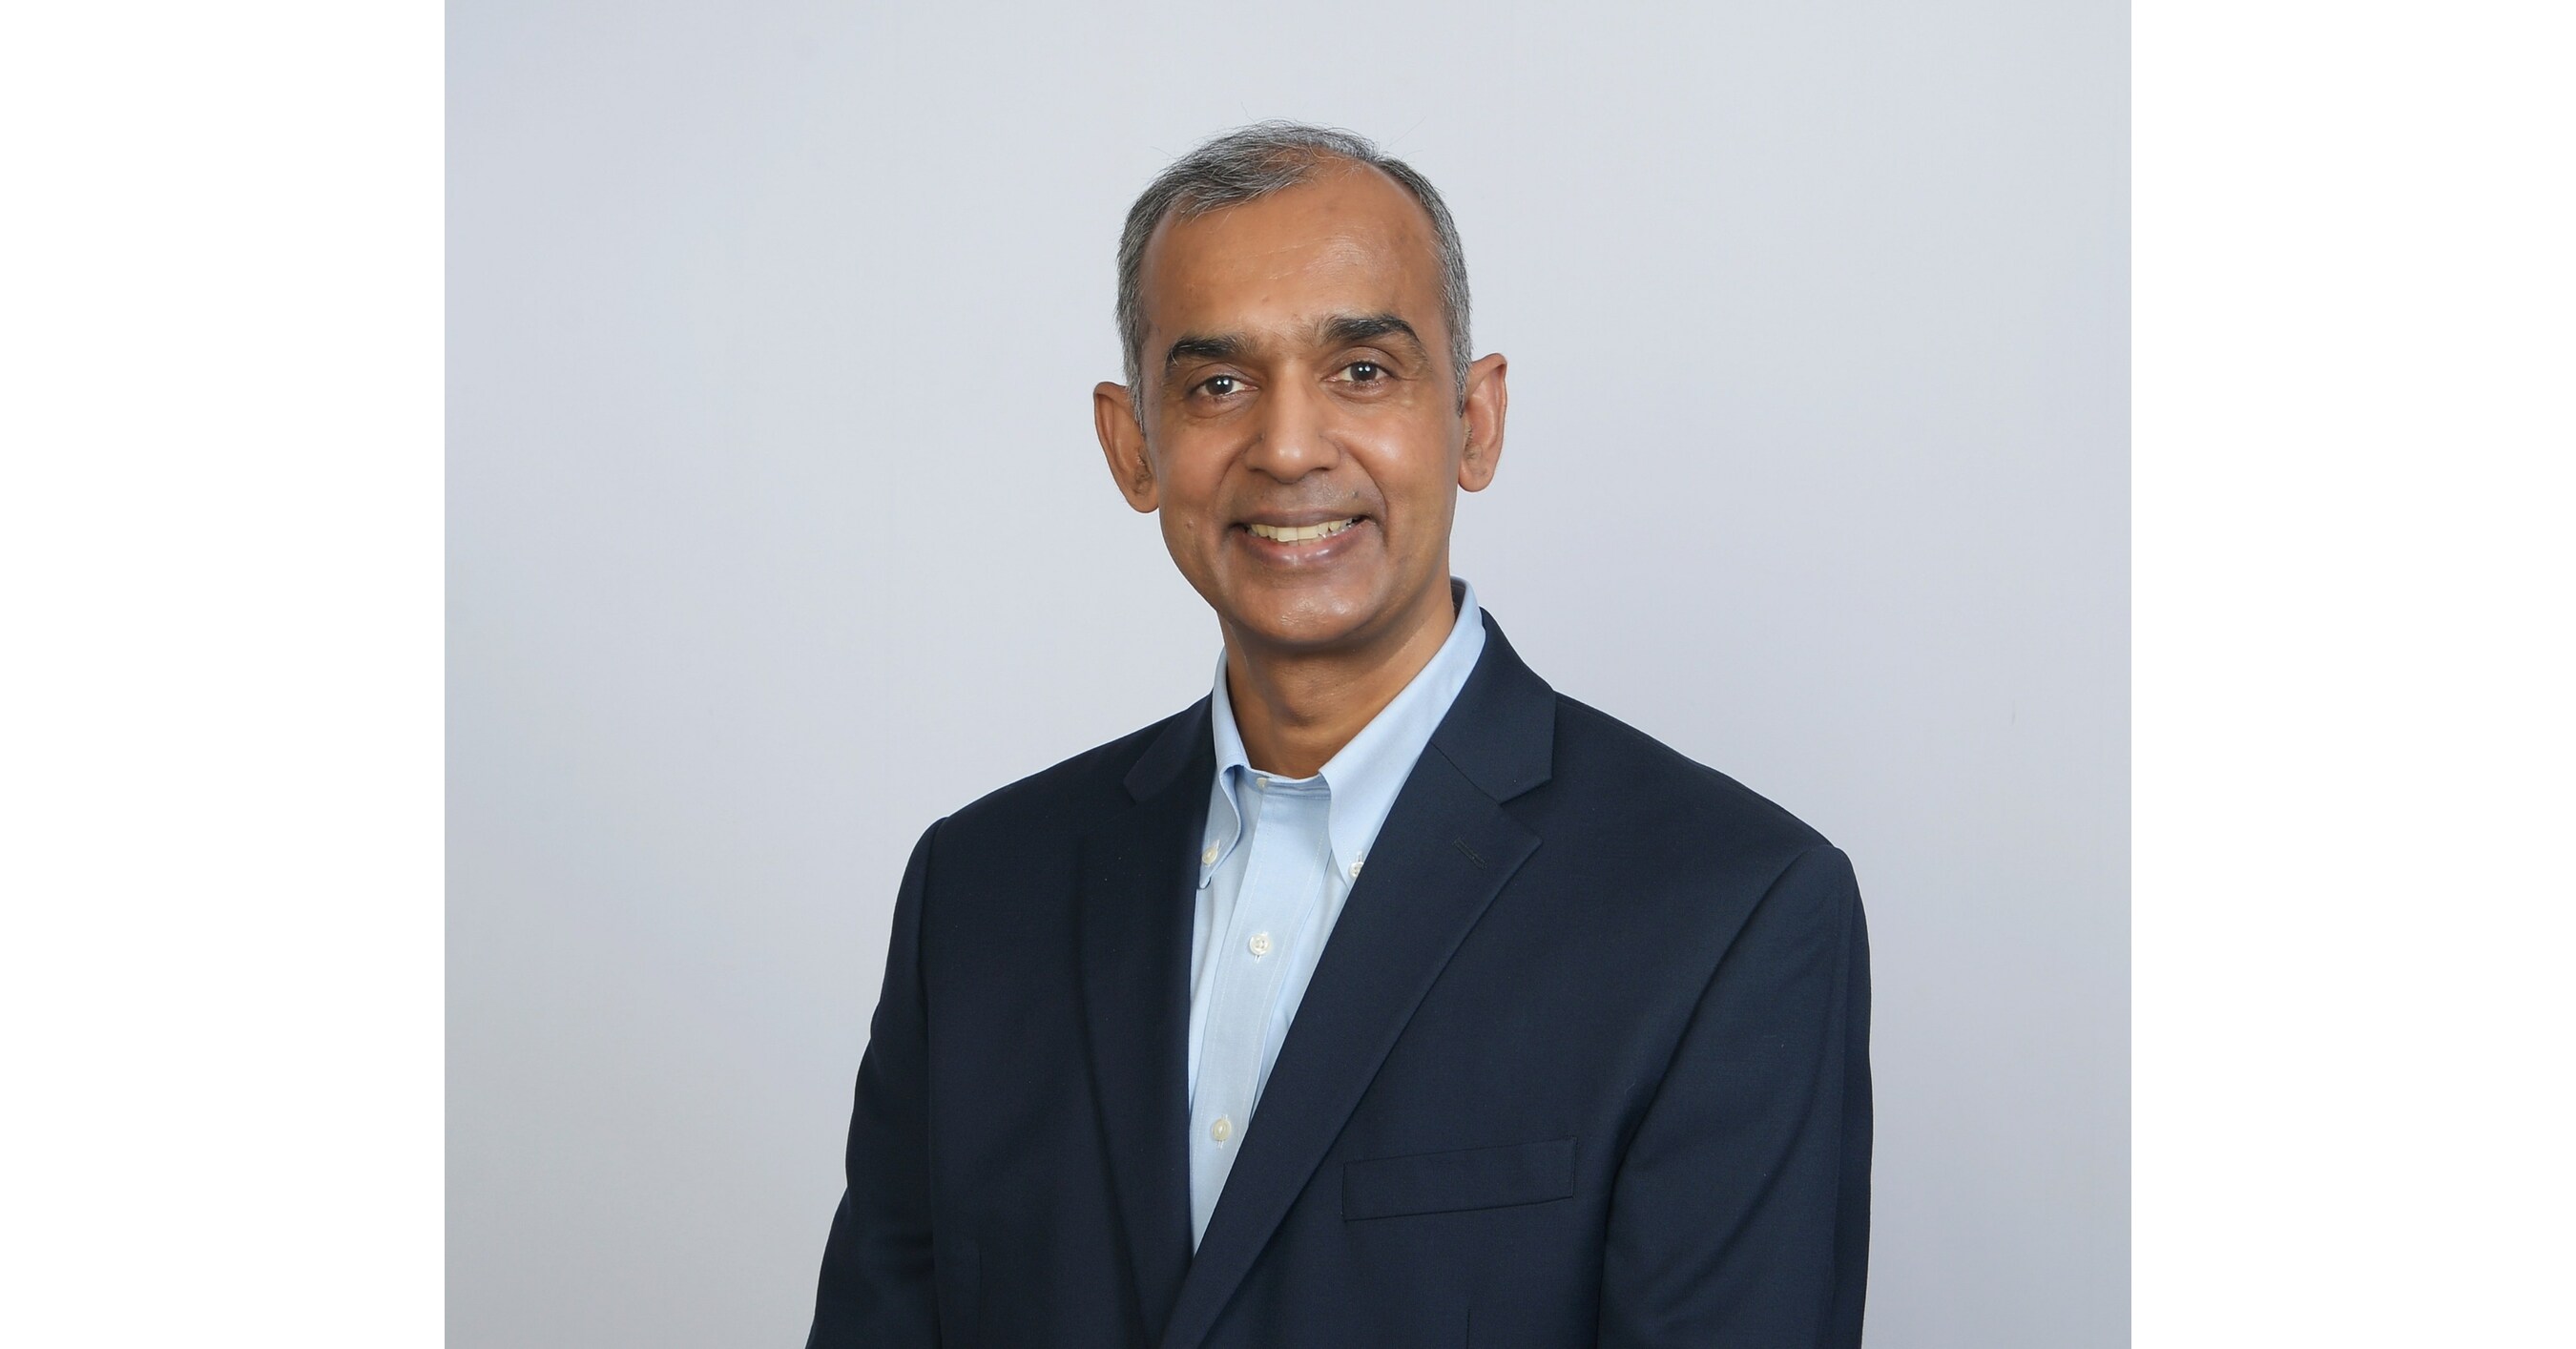 Firma York Space Systems ogłasza mianowanie Deva Rudry na nowego dyrektora generalnego ds. łańcucha dostaw